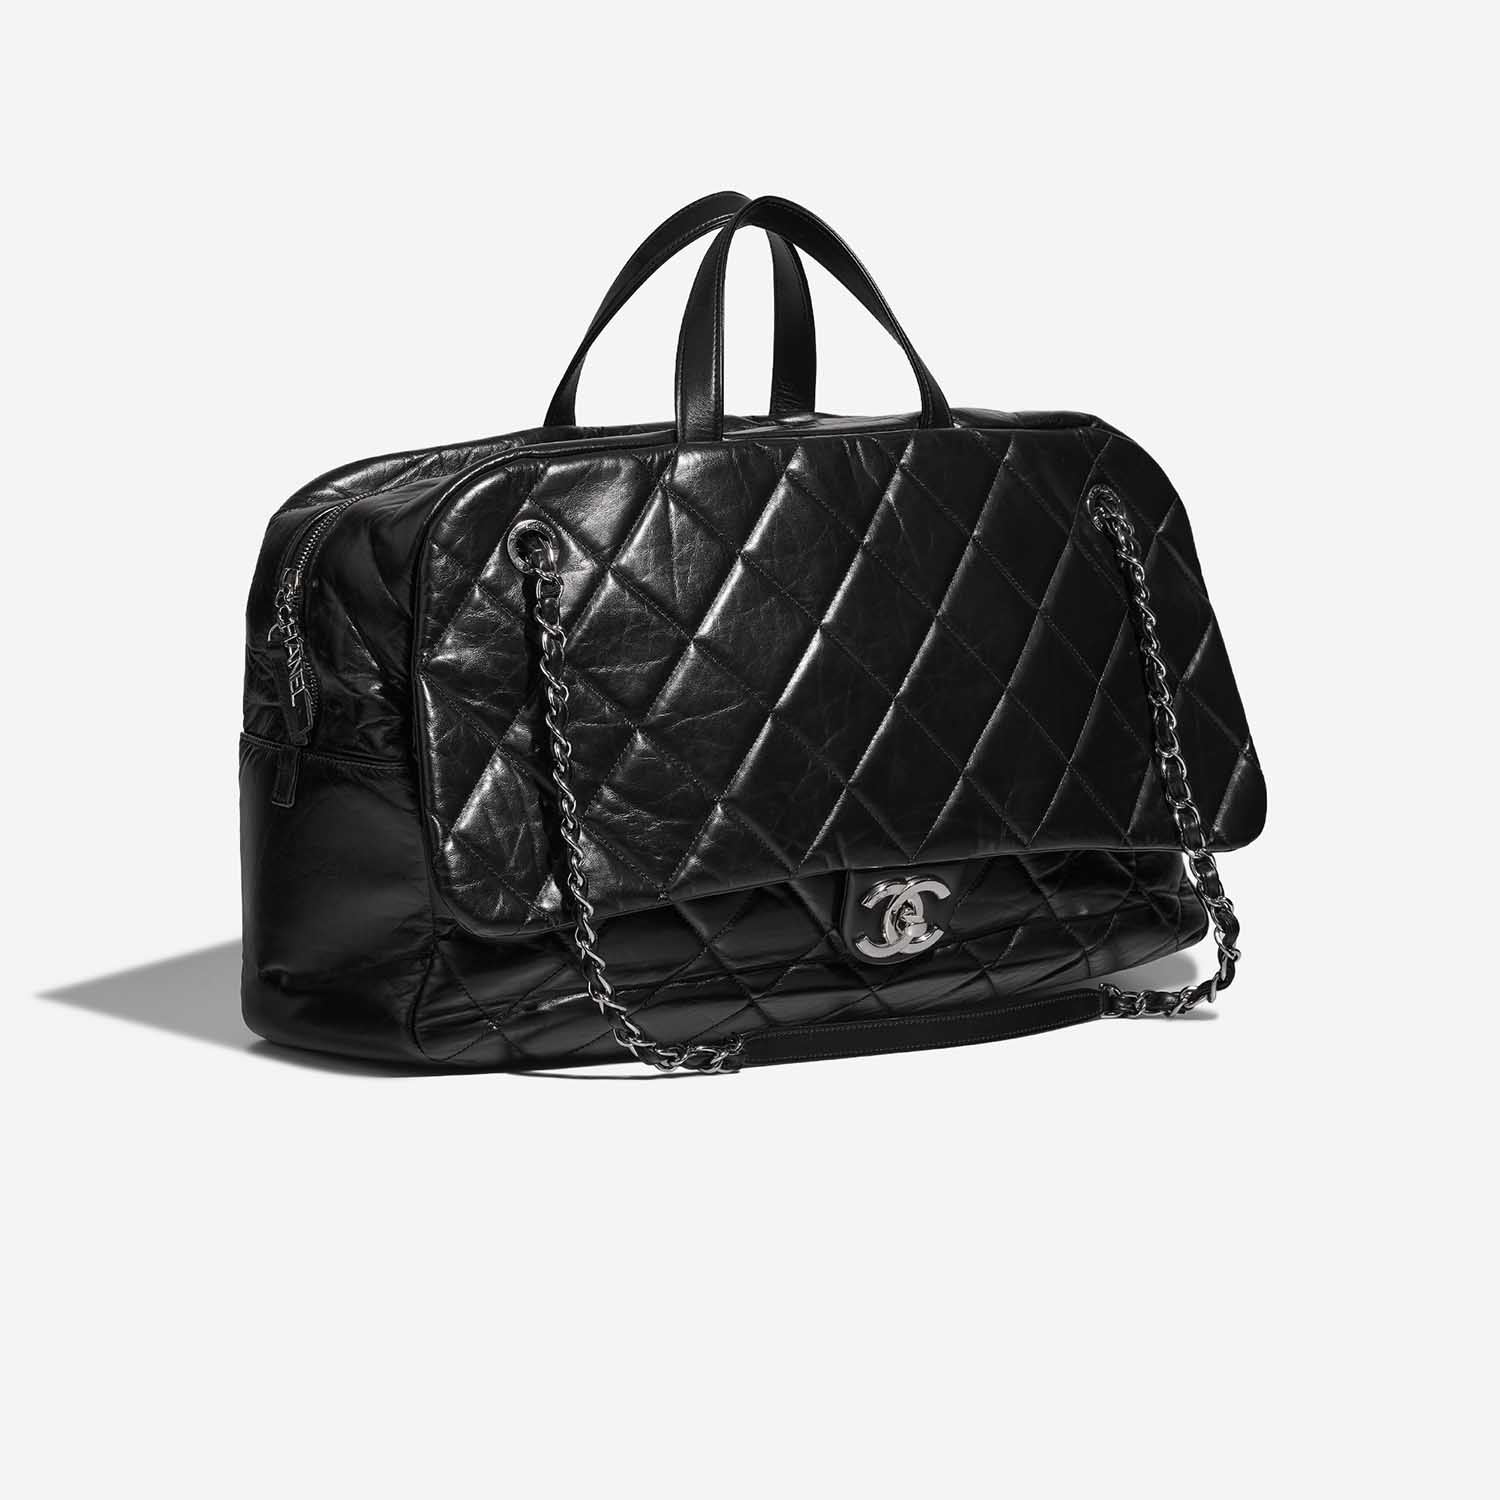 Chanel ExpressBowling Black Side Front | Verkaufen Sie Ihre Designer-Tasche auf Saclab.com